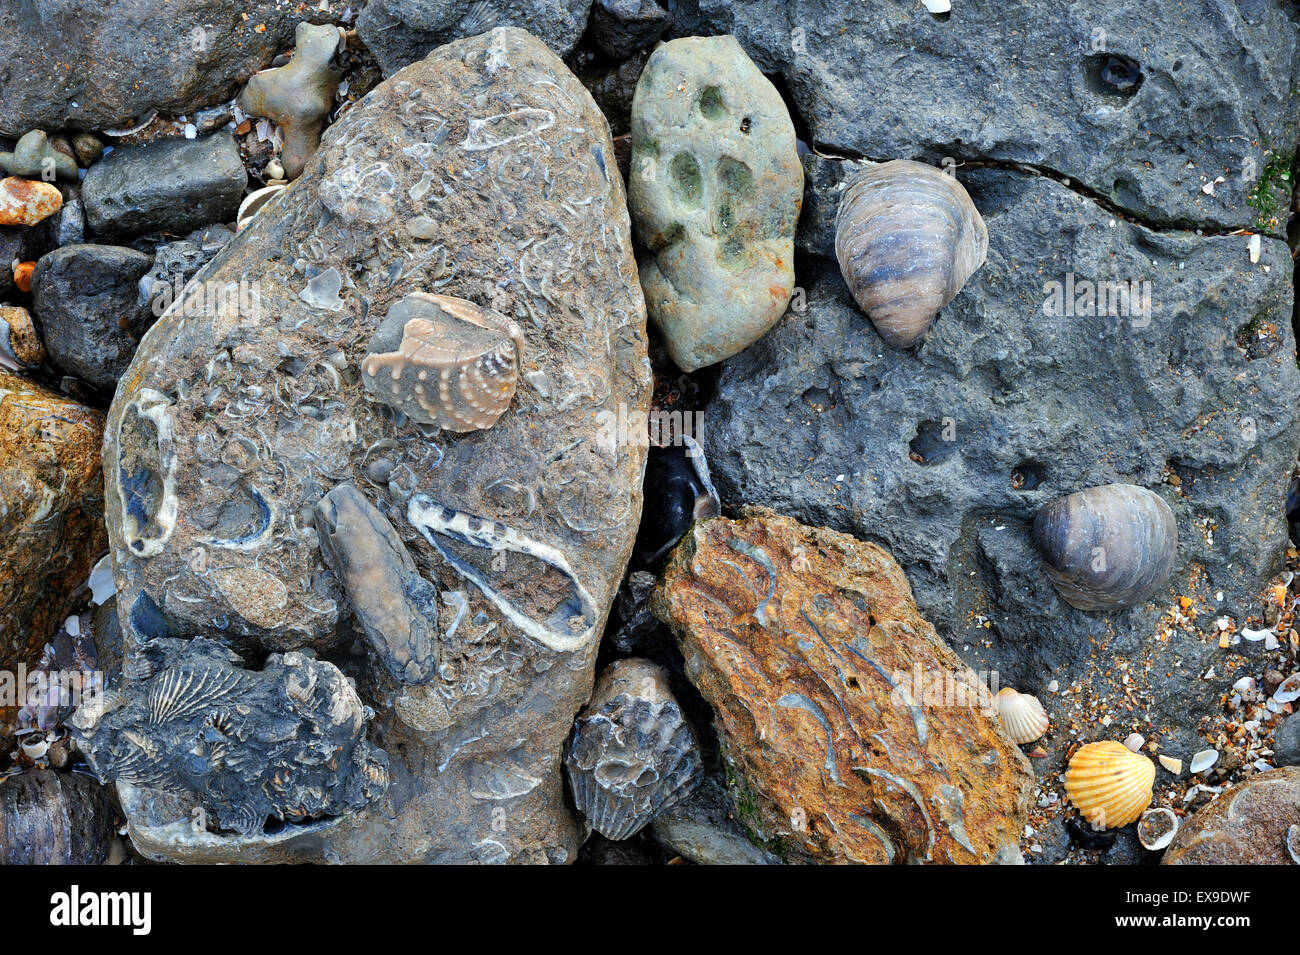 Conchiglie fossili di molluschi bivalvi dal cretaceo e Giurassico sulla spiaggia di Vaches Noires vicino a Houlgate, Normandia, Francia Foto Stock